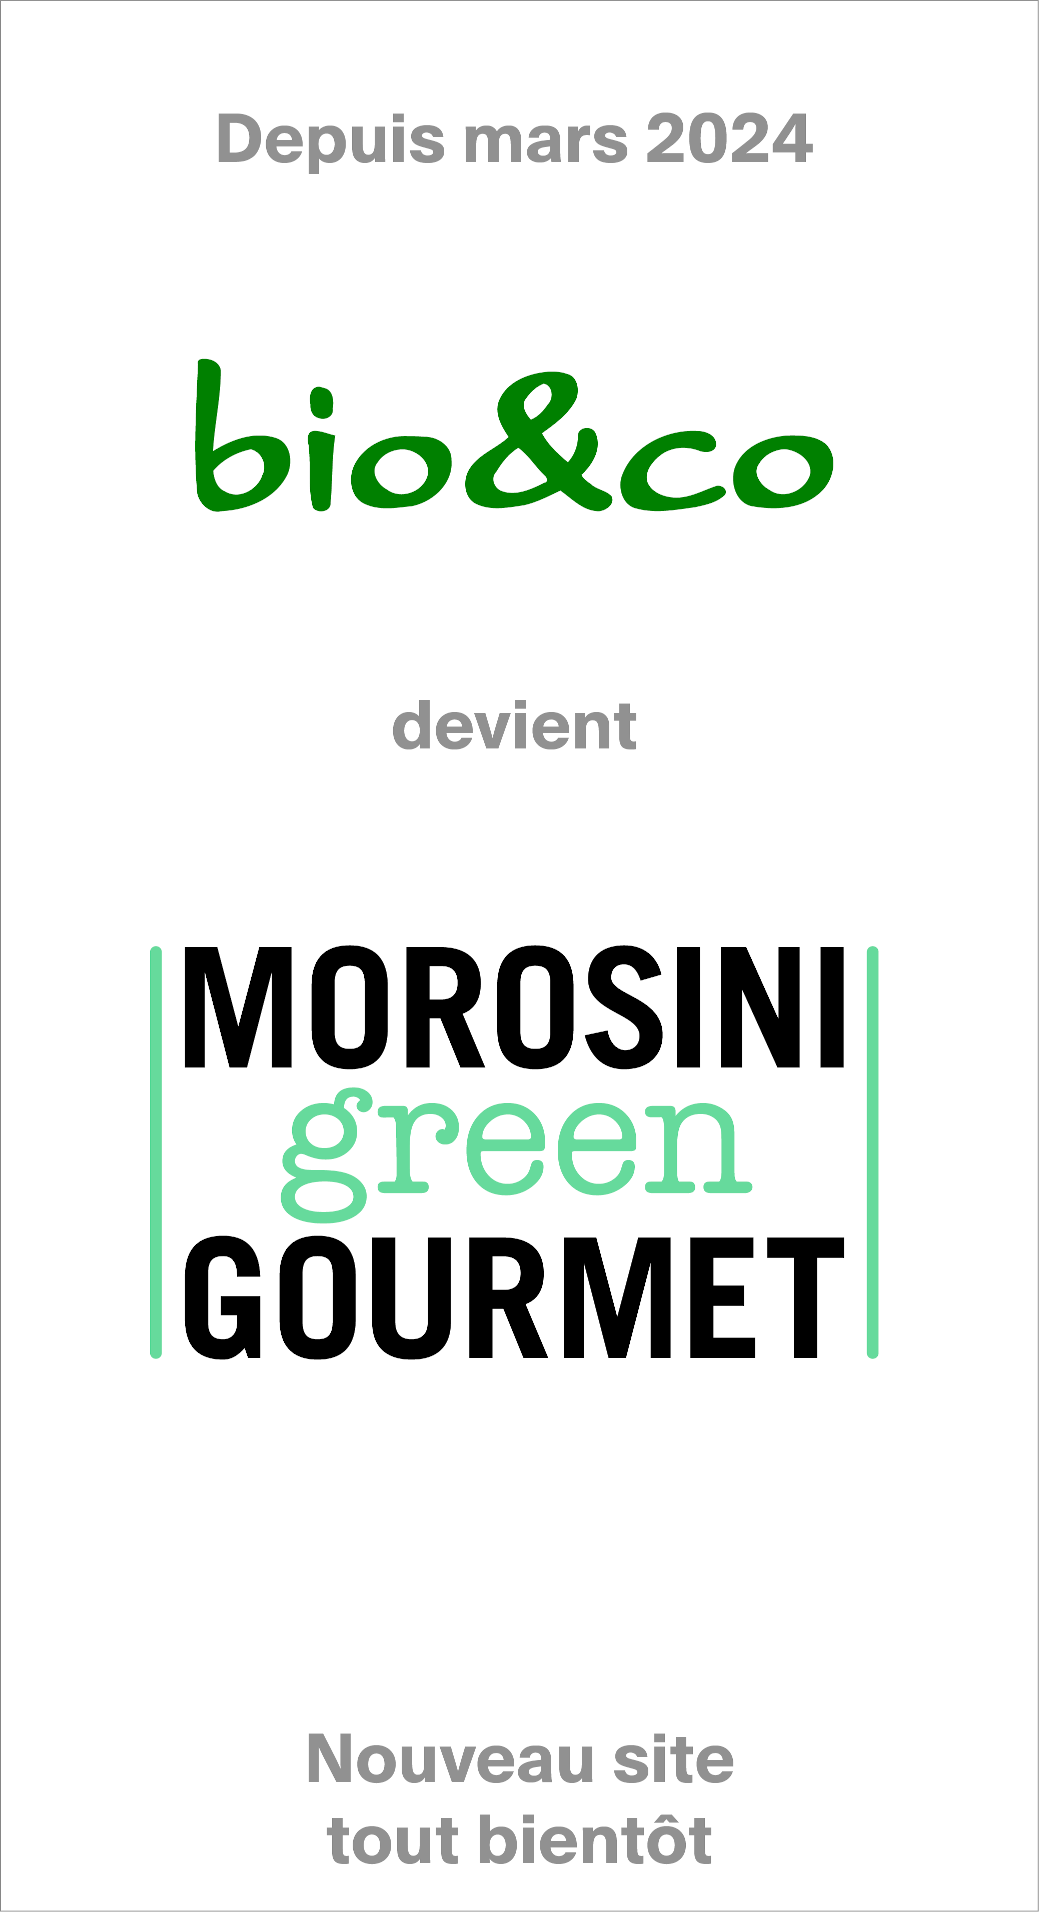 Annonce, bio&co devient Morosini Green Gourmet